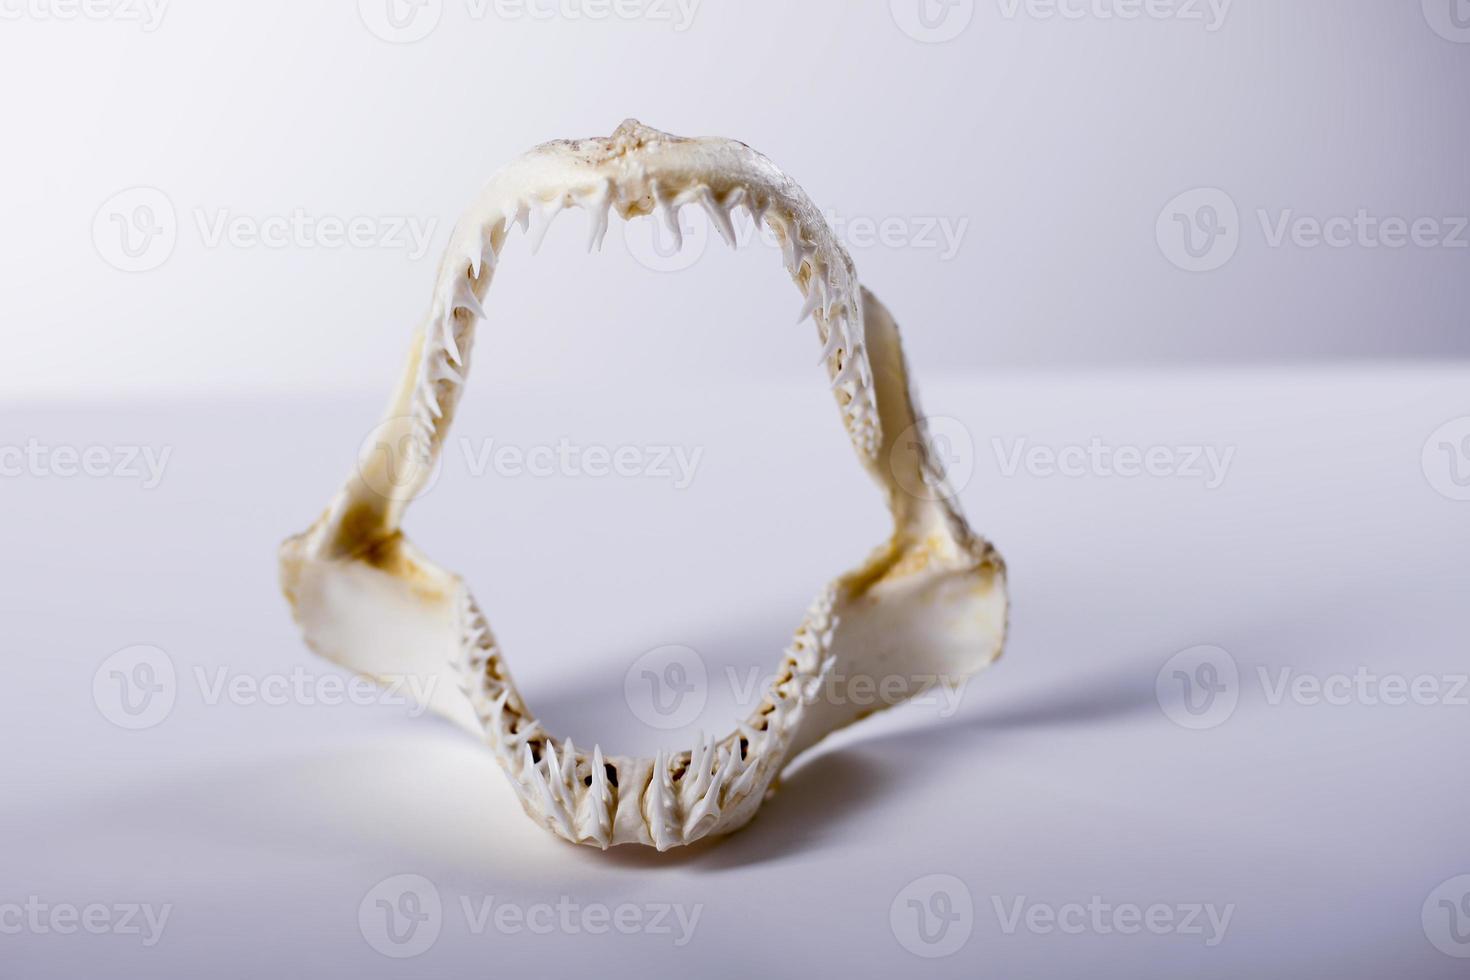 ensaio de estúdio de mandíbulas de tubarão foto